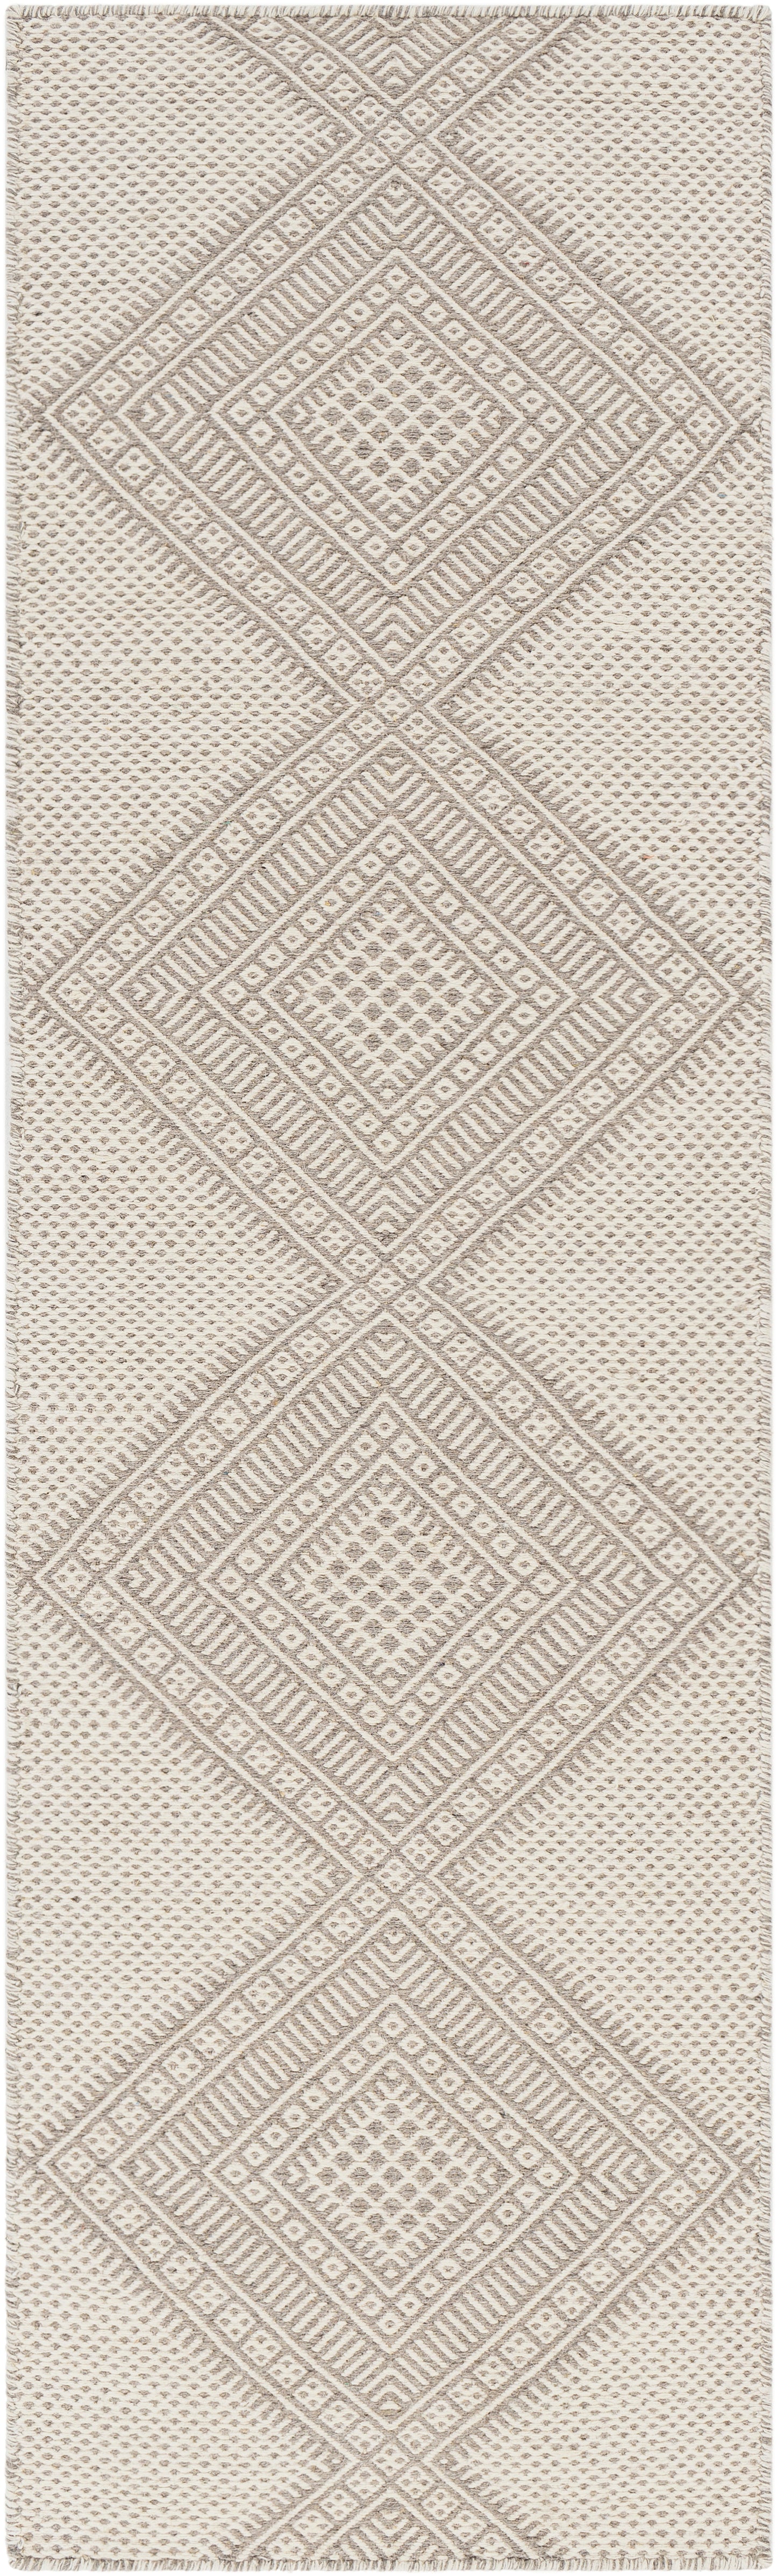 Mardin 29486 Hand Woven Wool Indoor Area Rug by Surya Rugs